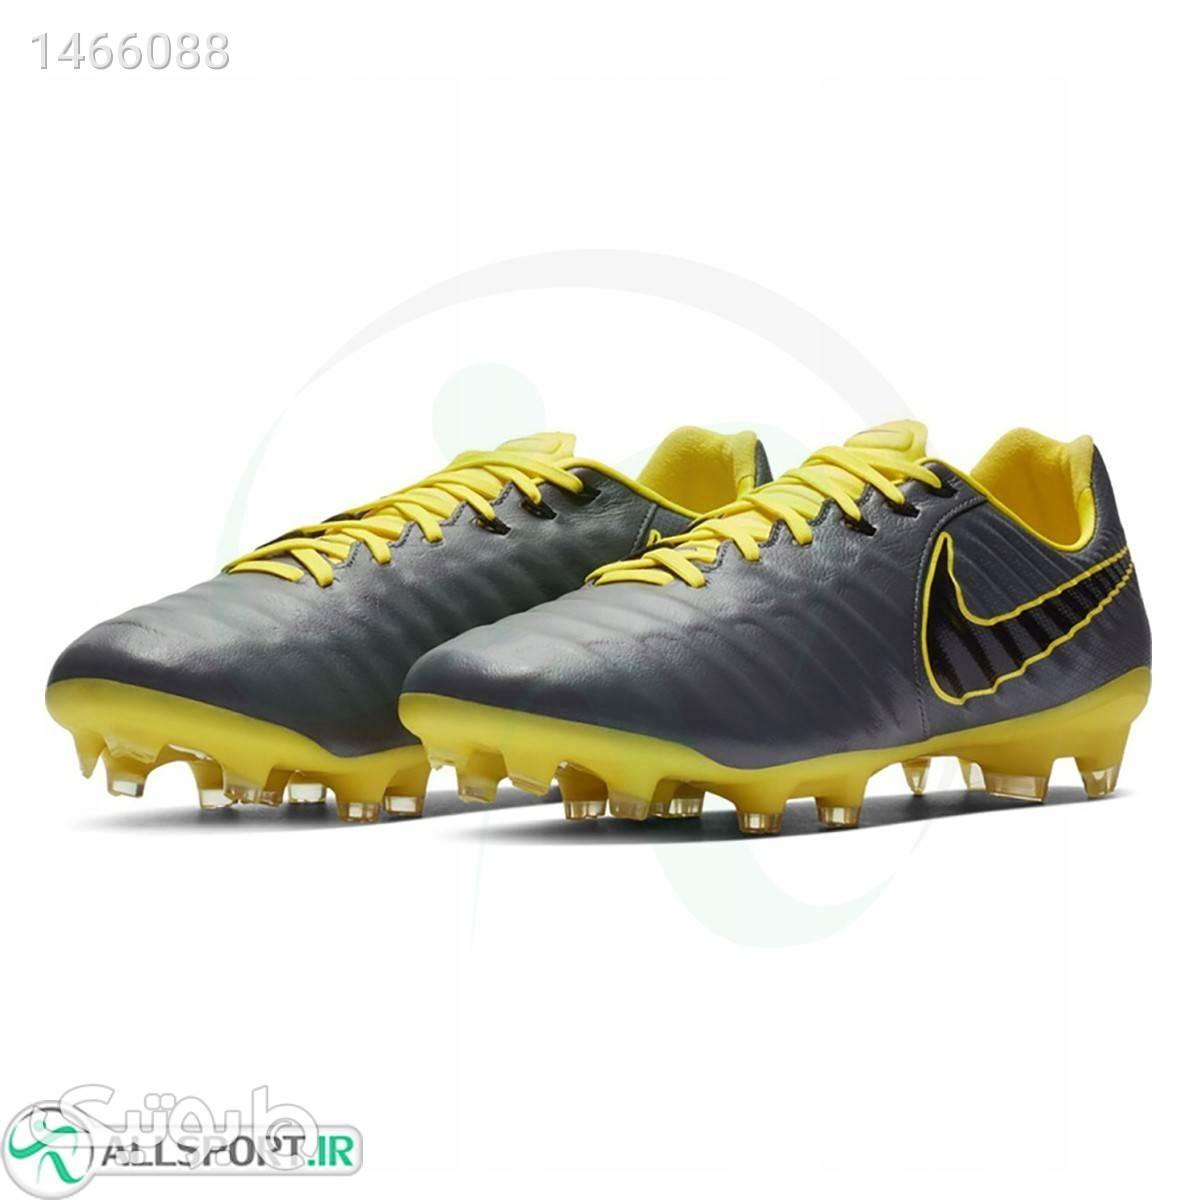 کفش فوتبال نایک تمپو Nike Tiempo Legend7 AH724070 طوسی كتانی مردانه